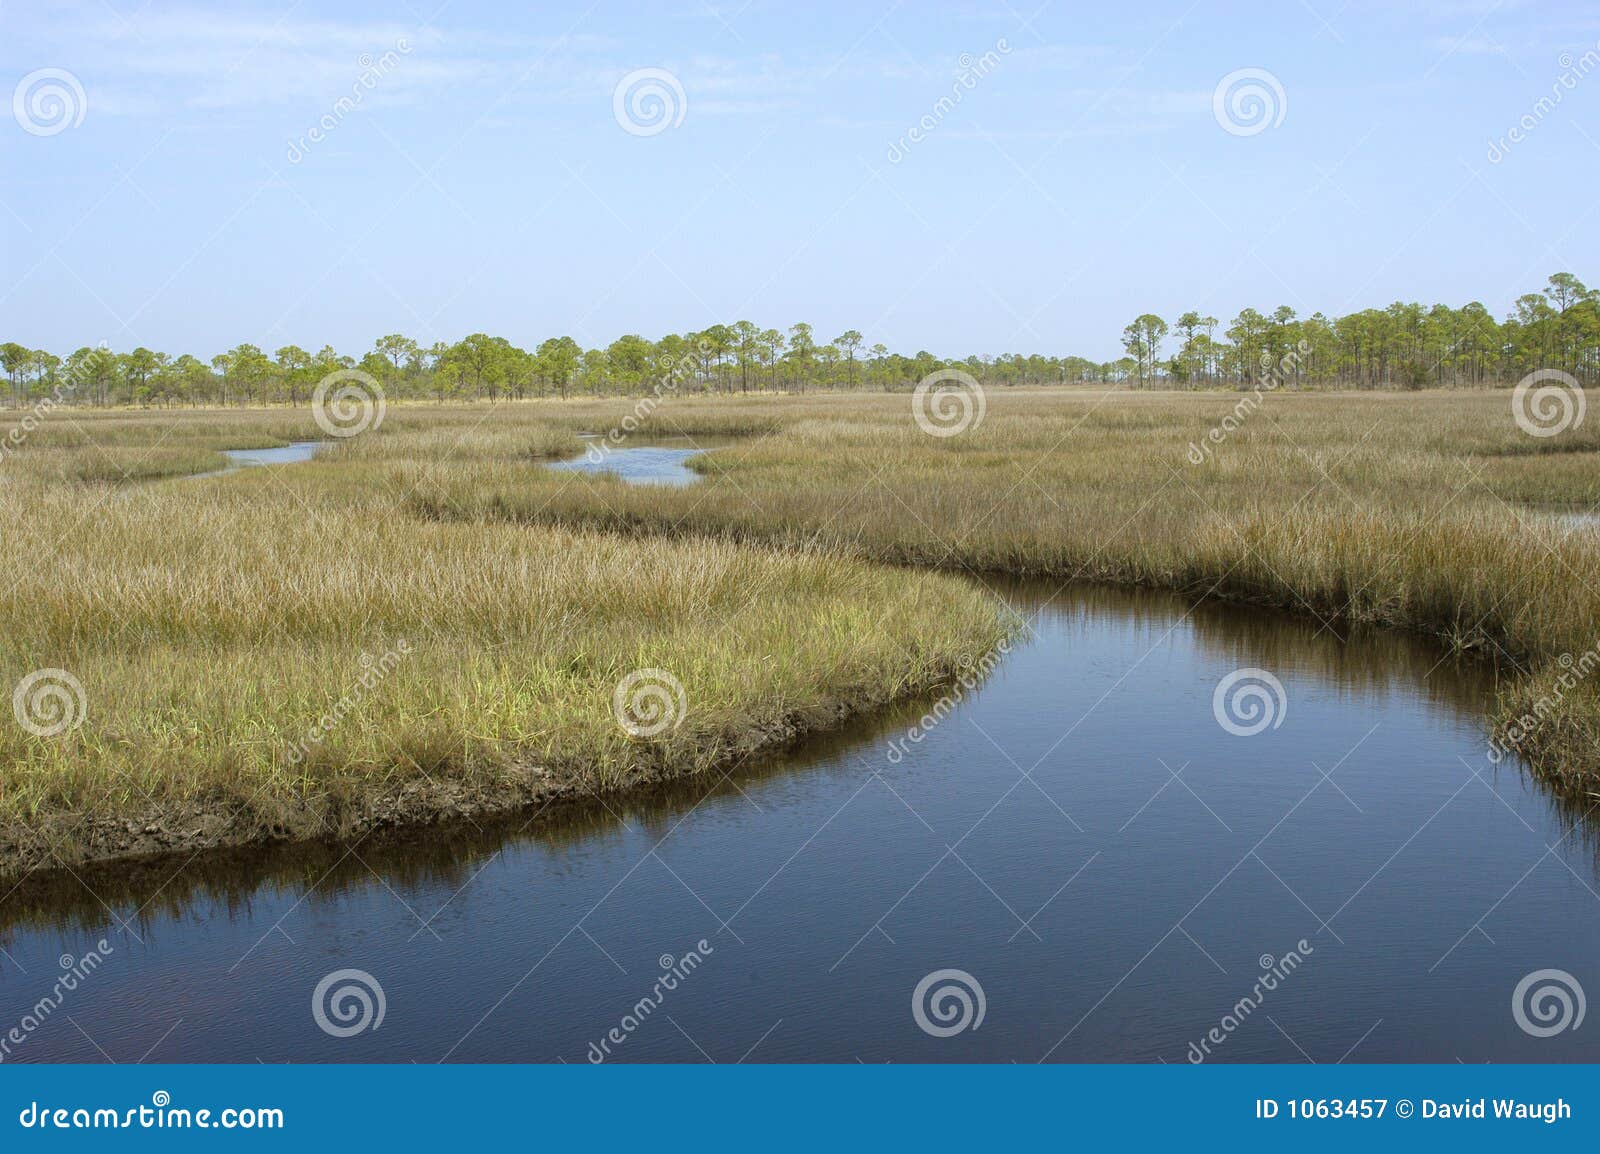 tidal marsh